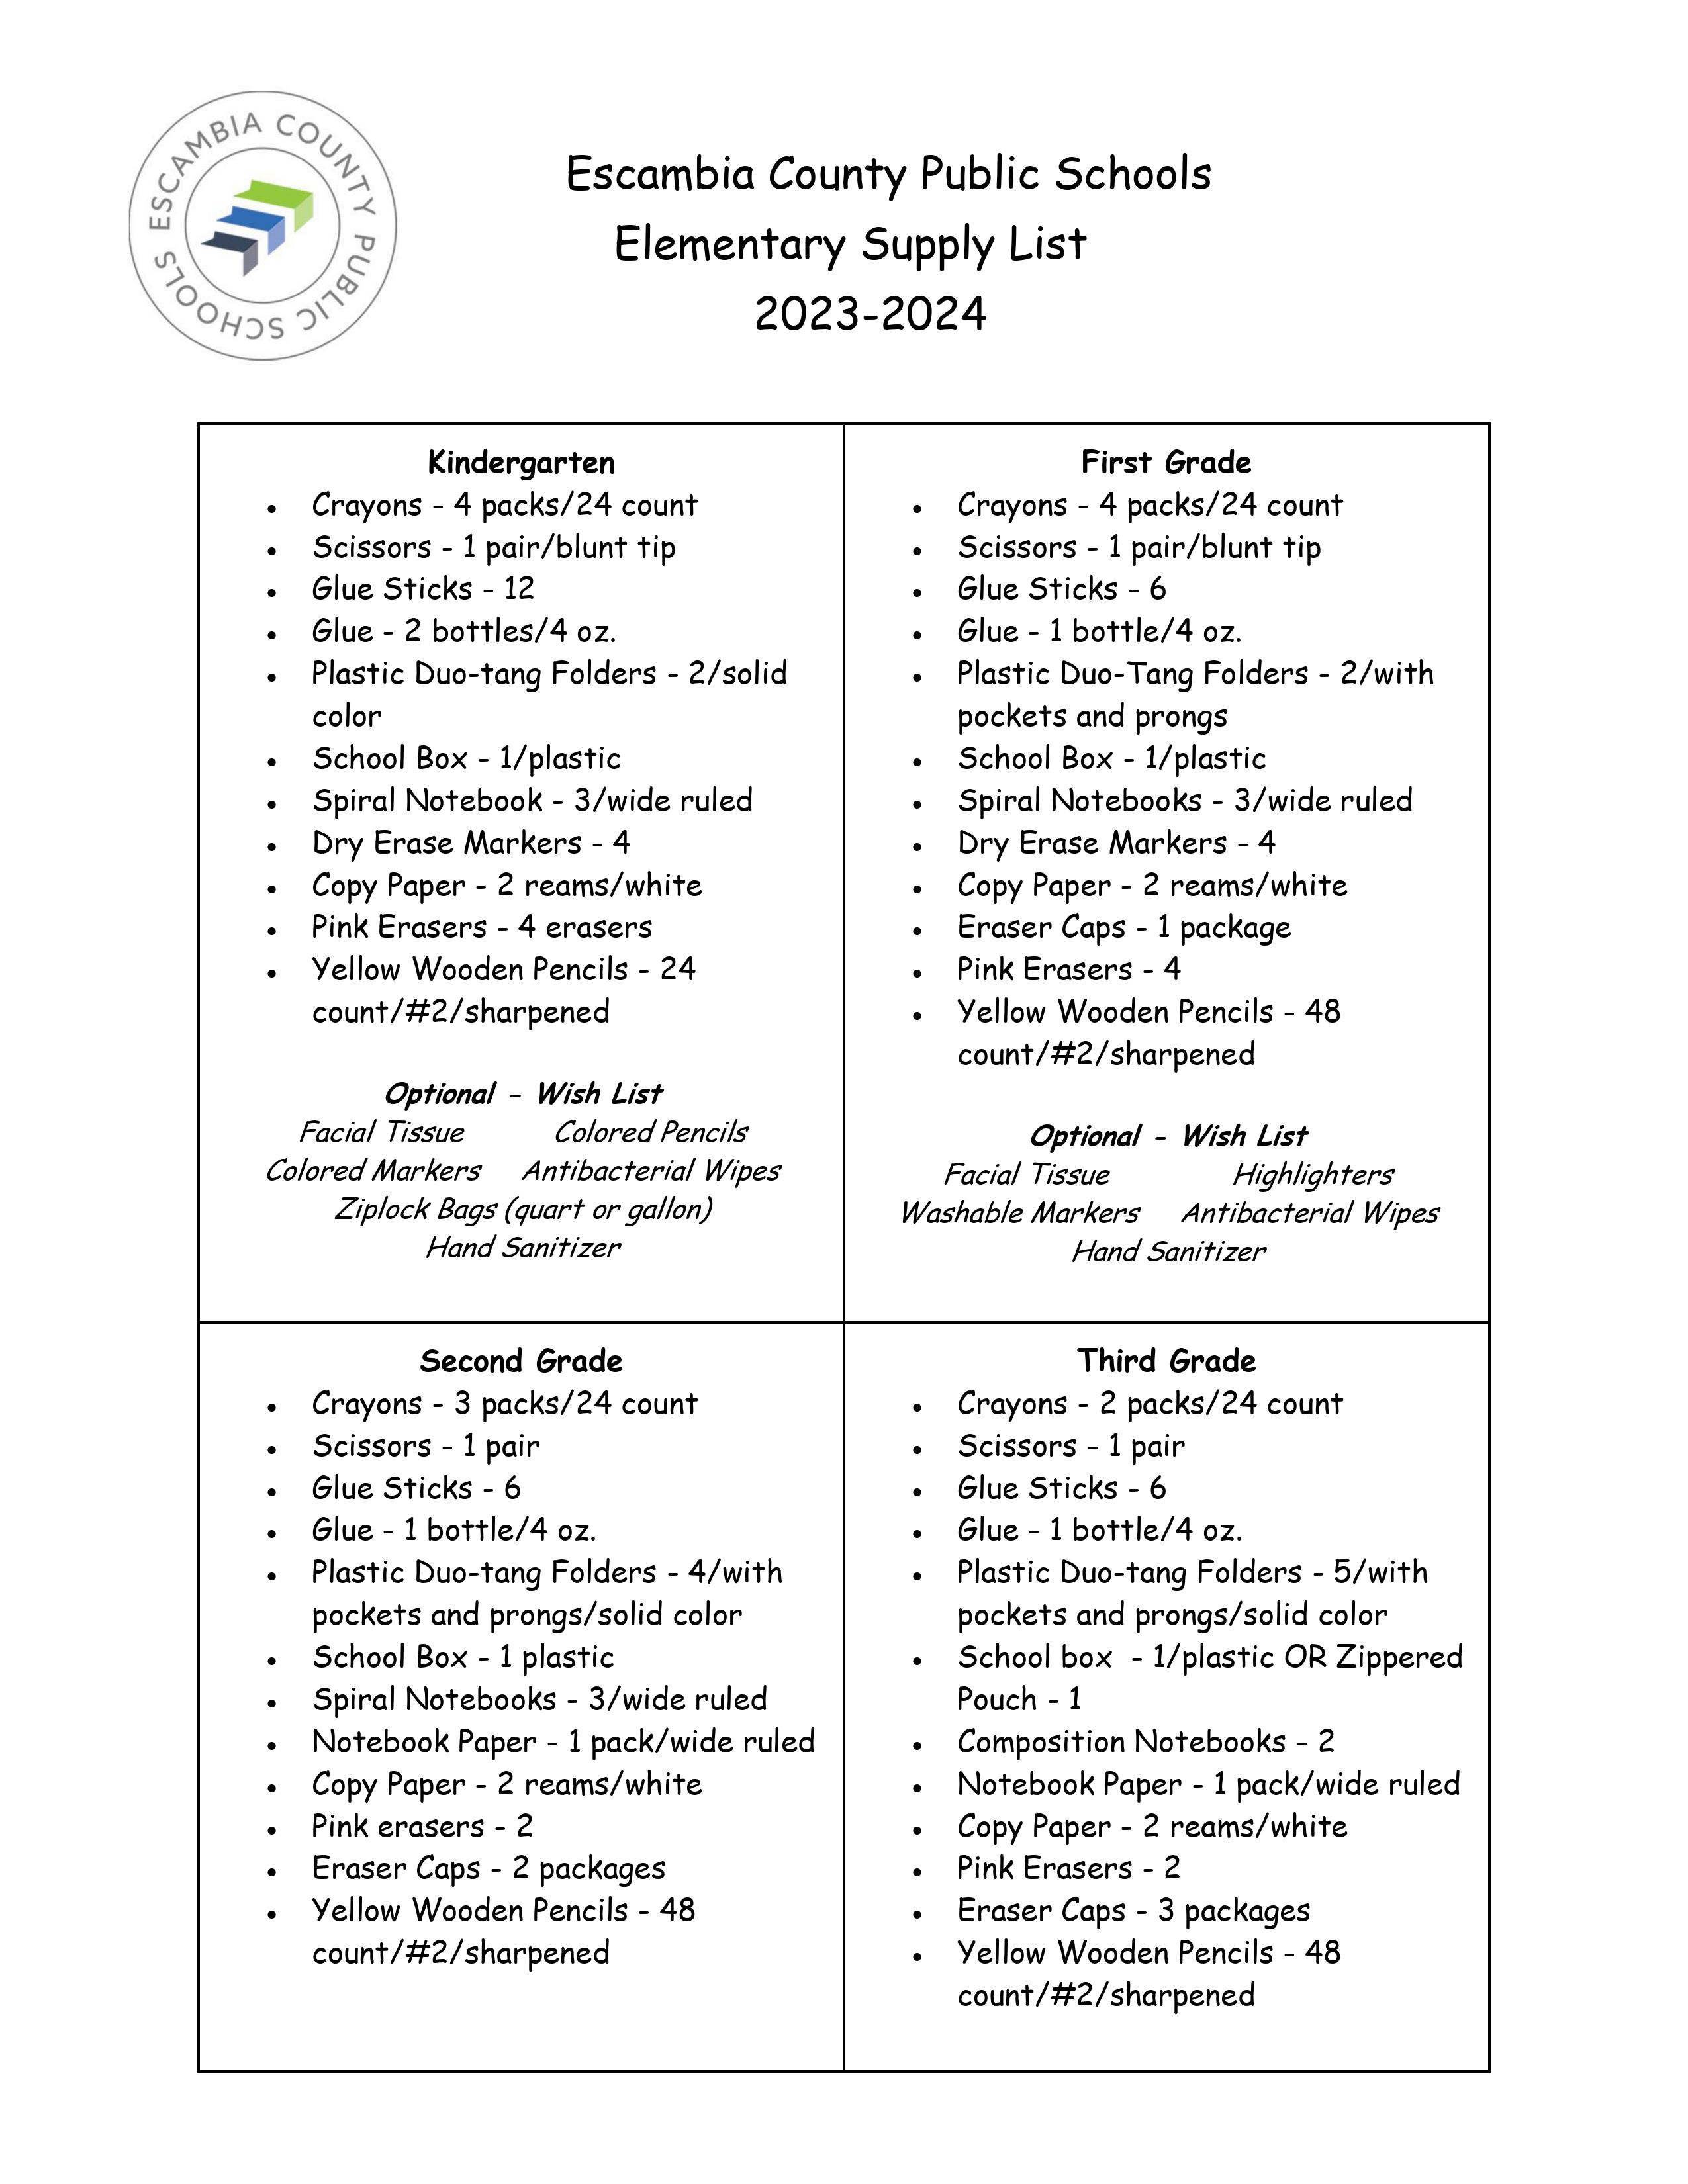 School Supply List Grades K-3